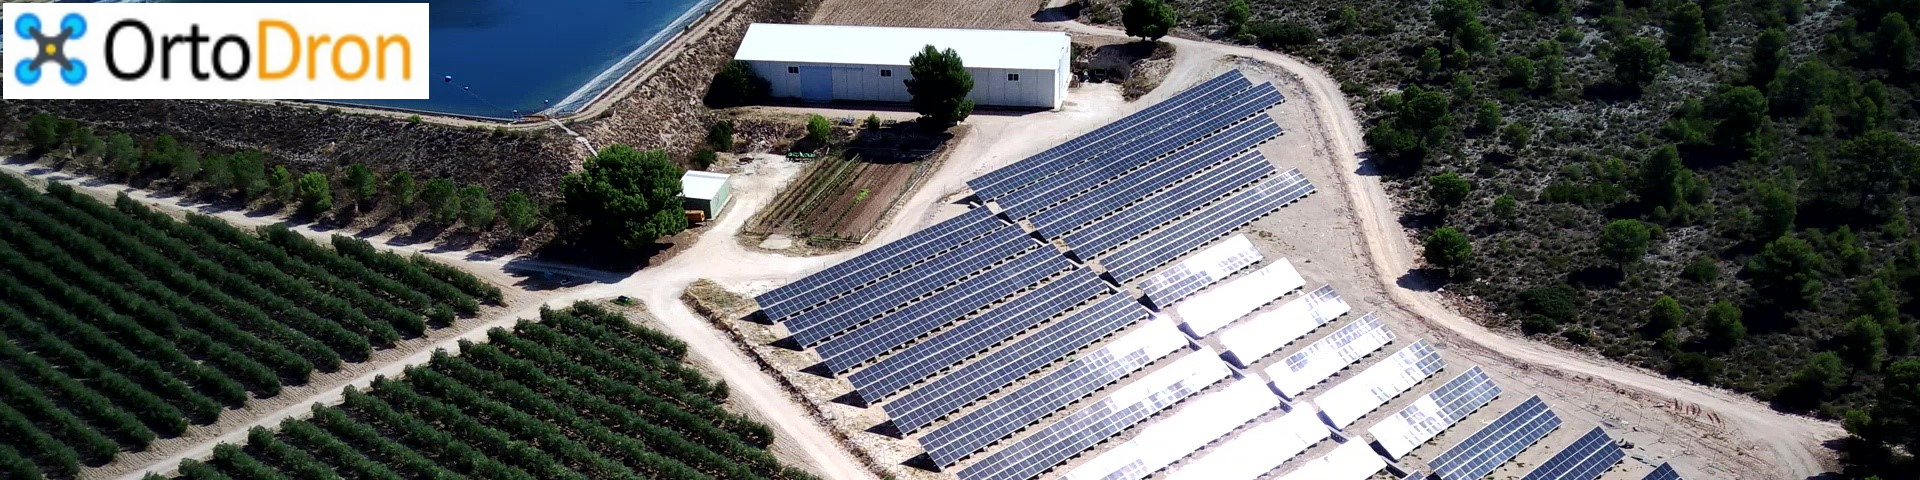 En este momento estás viendo Instalación fotovoltaica de autoconsumo en Bodegas Francisco Gómez, Villena, Alicante.